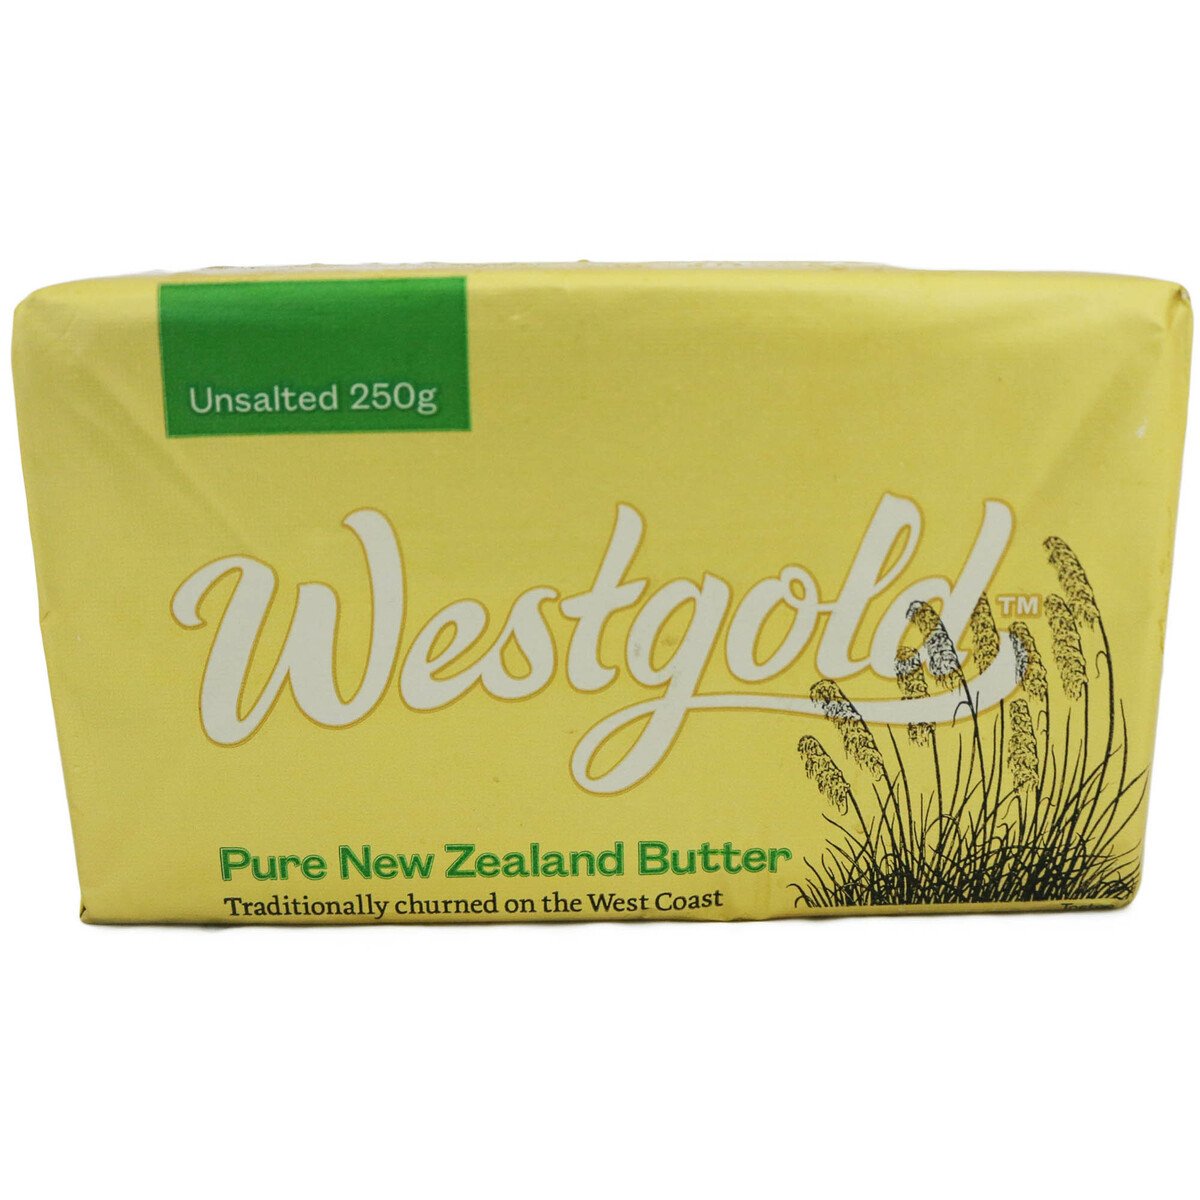 Westgold Unsalted Butter 250g